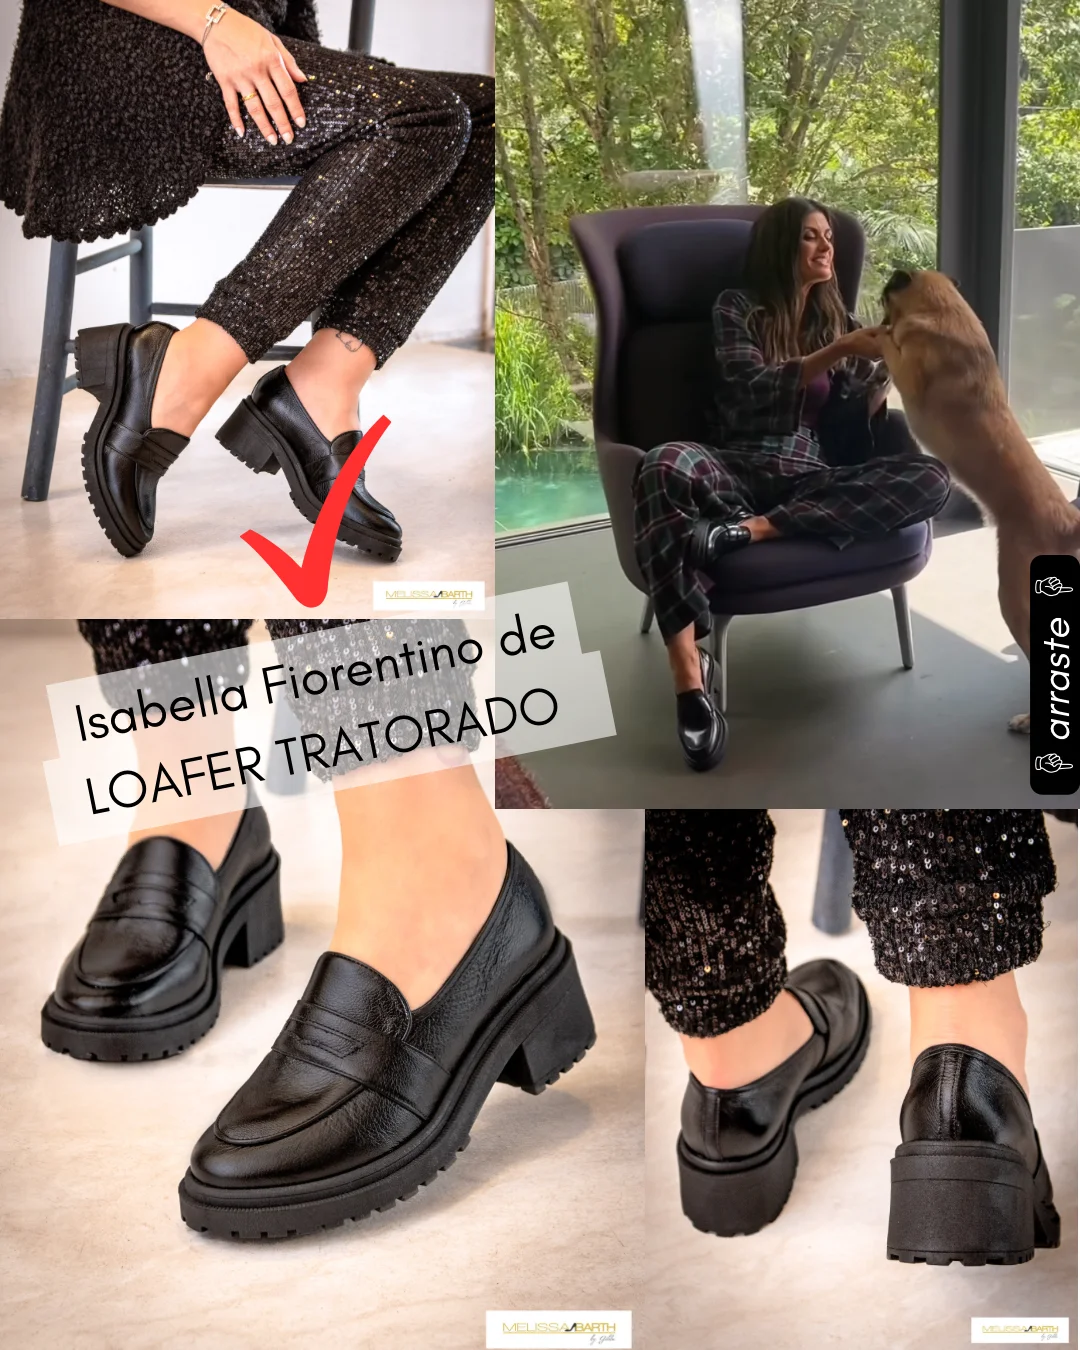 quatro imagens em uma mesma foto contendo as fotos anteriores e uma nova foto de Isabela Fiorentinno usando uma calçado tipo loafer preto sentada em uma poltrona, sorrindo e brincando com um chachorro cor de caramelo. 